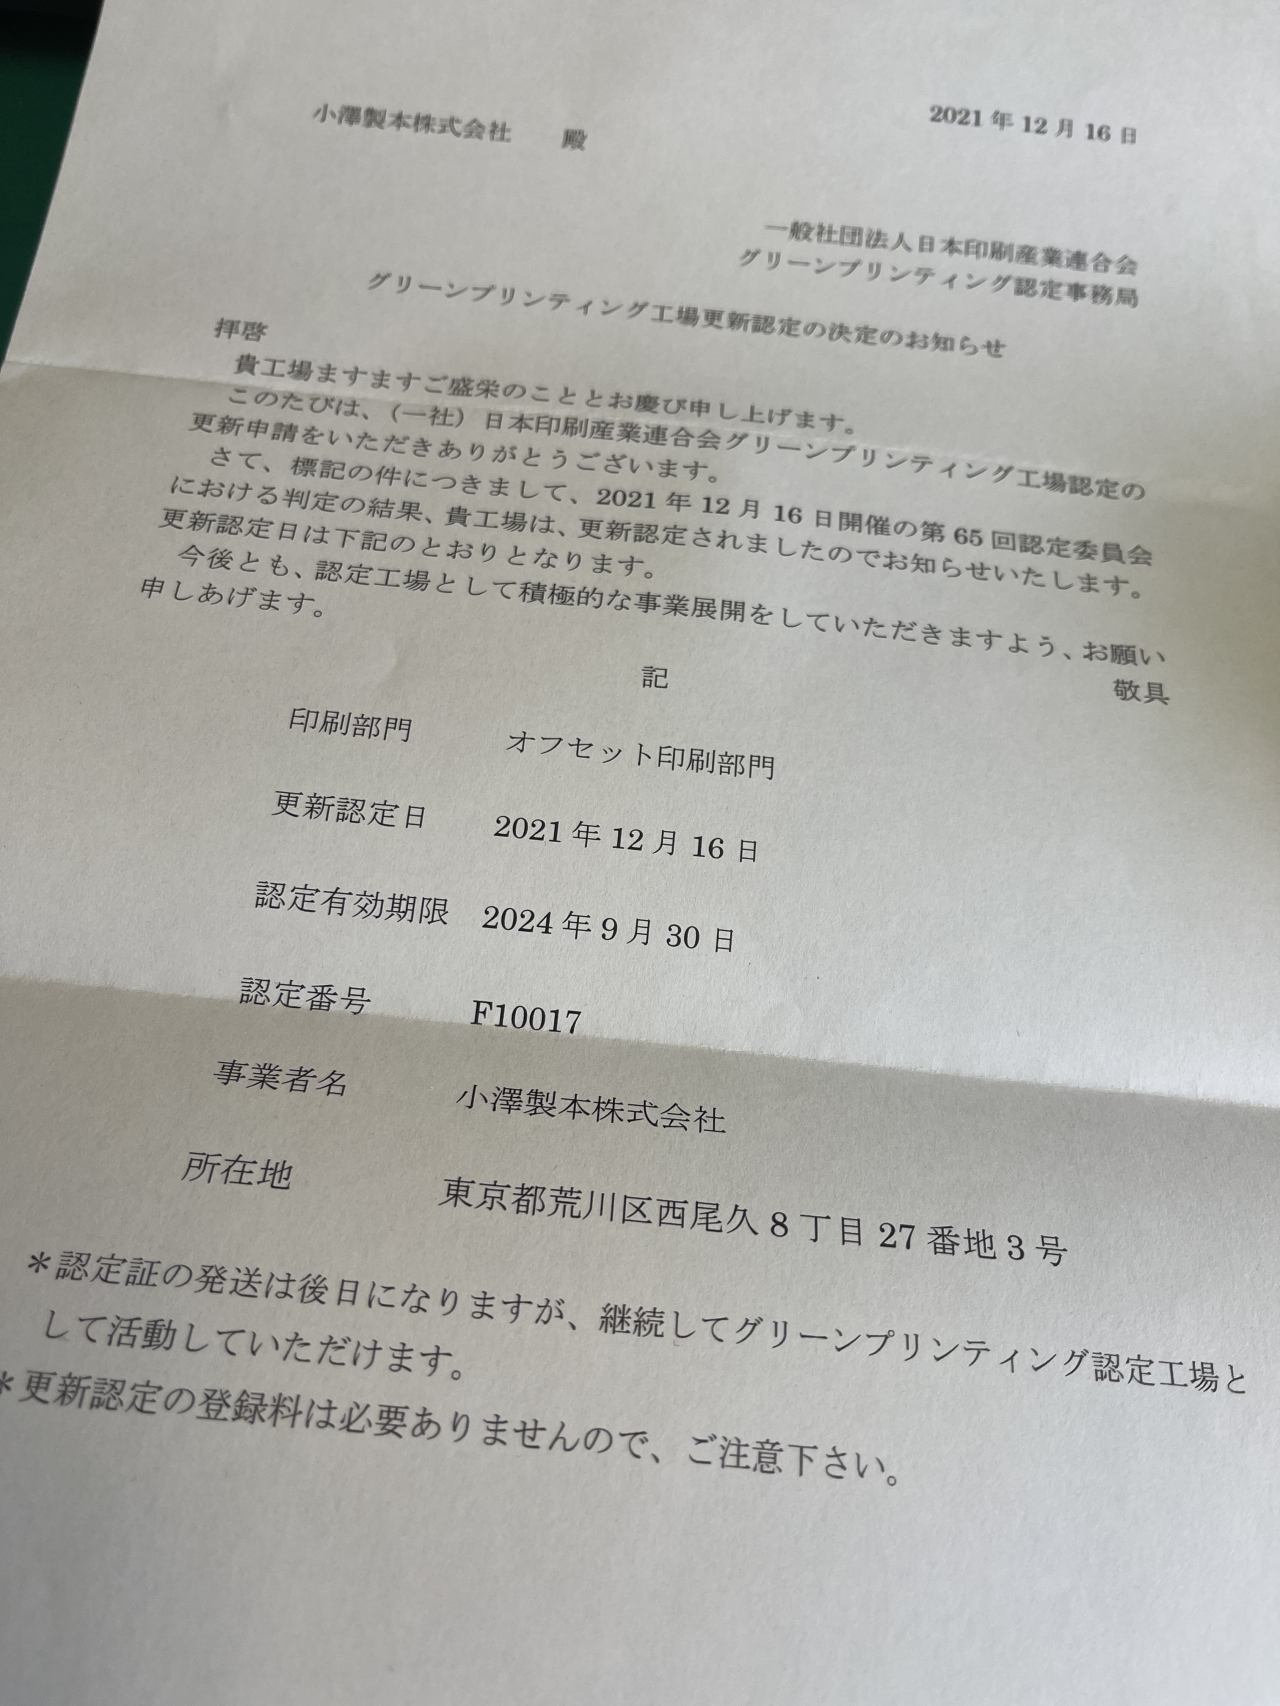 日本印刷産業連合会グリーンプリンティング認定工場
更新認定通知届きました。認定期間2024年9月30日まで